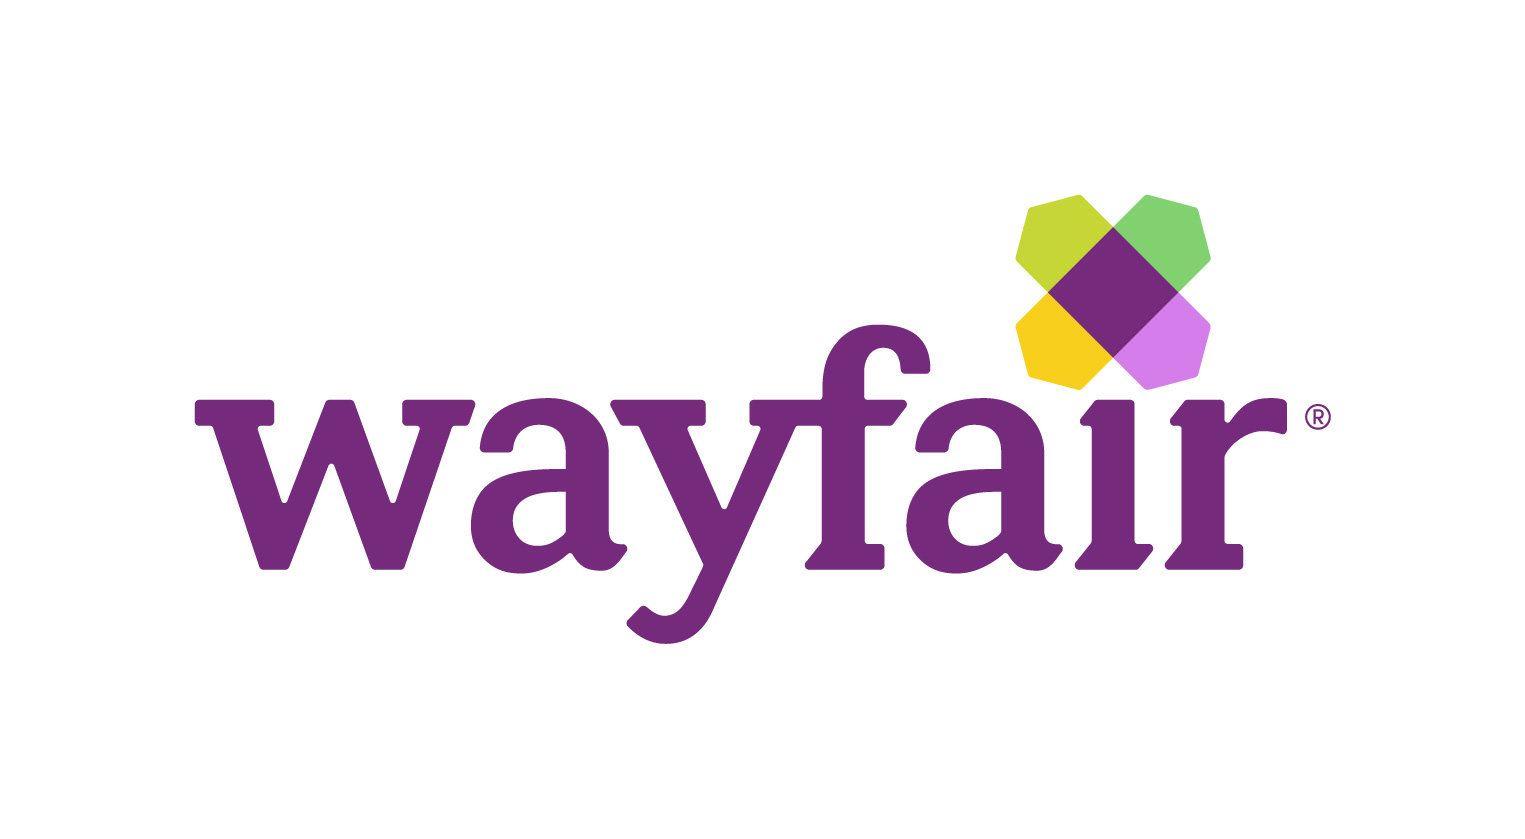 Wayfair.com Logo - About | Wayfair